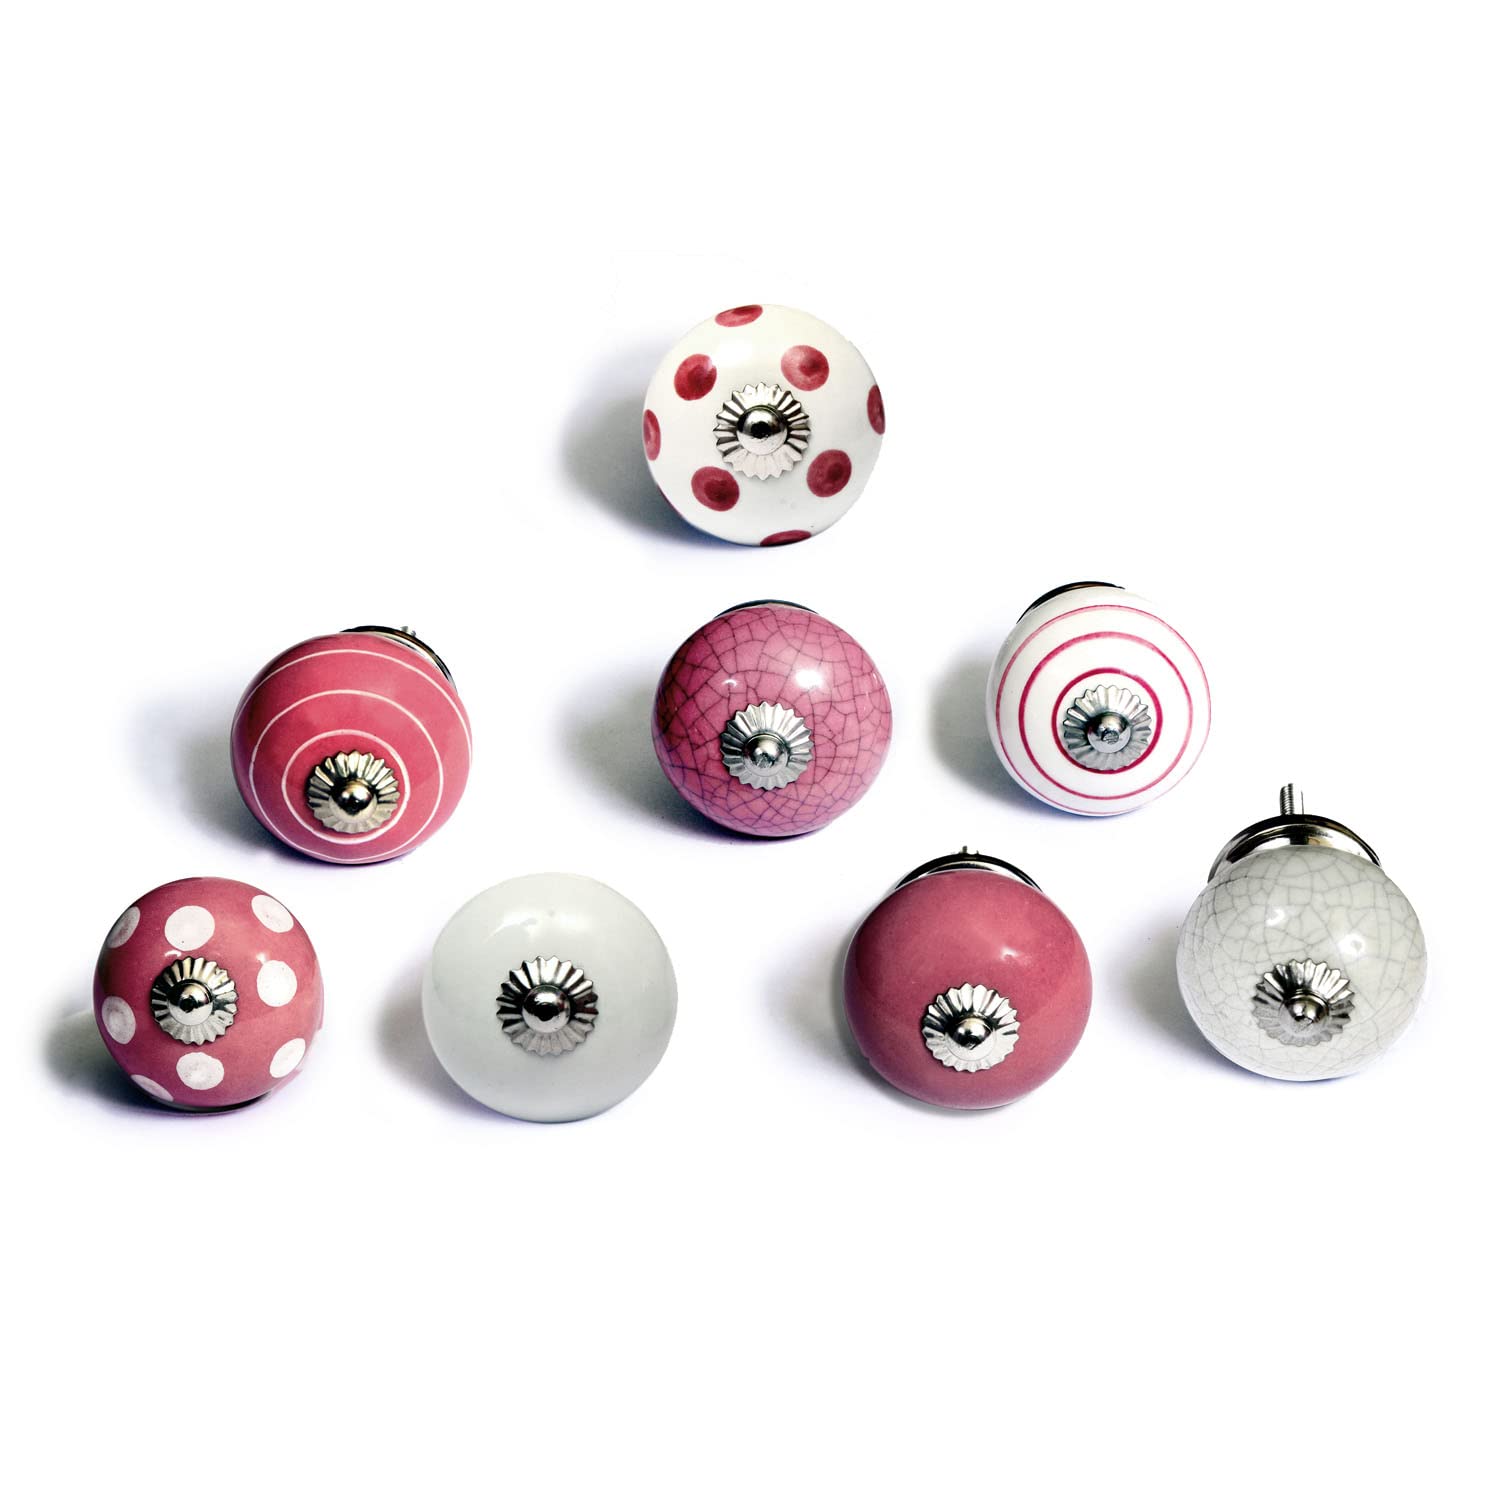 Set de 8 pomos tiradores de cerámica, En colores rosa y blanco